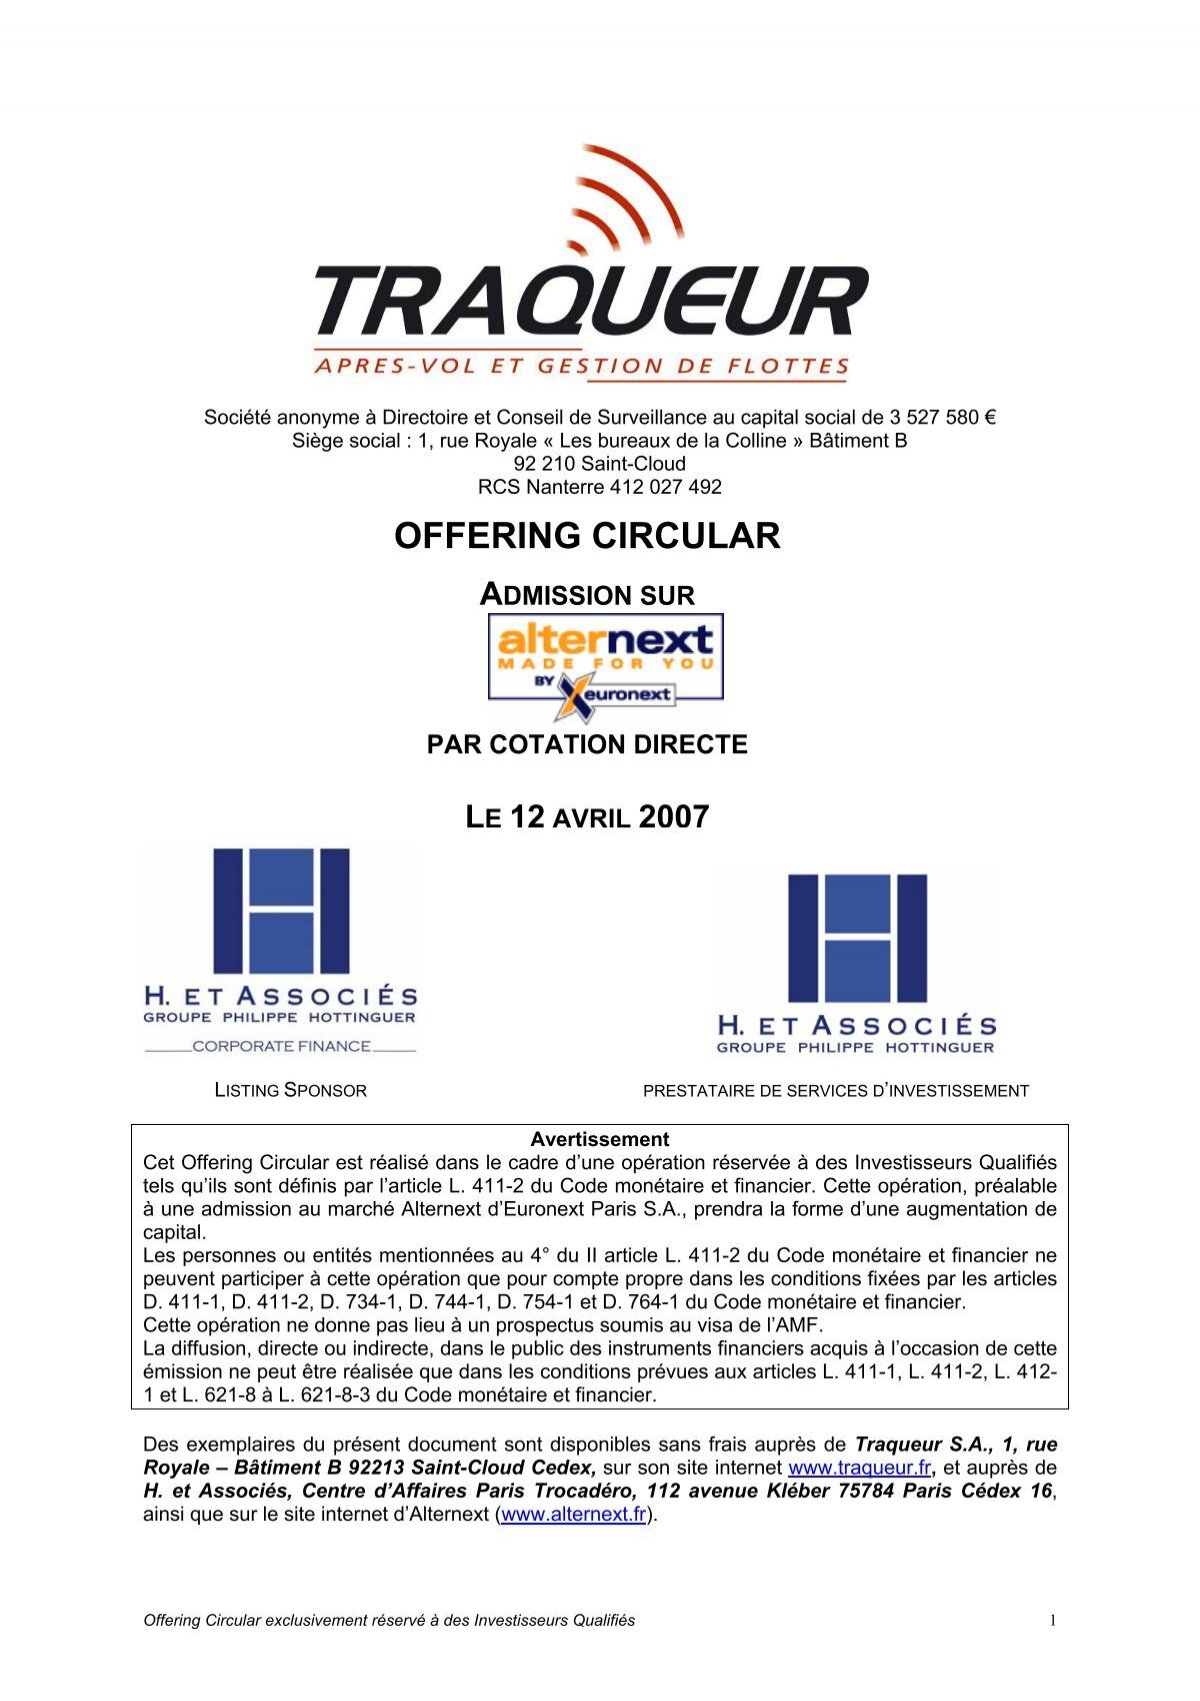 Groupe Traqueur - Après-vol et solutions télématiques - Voiture